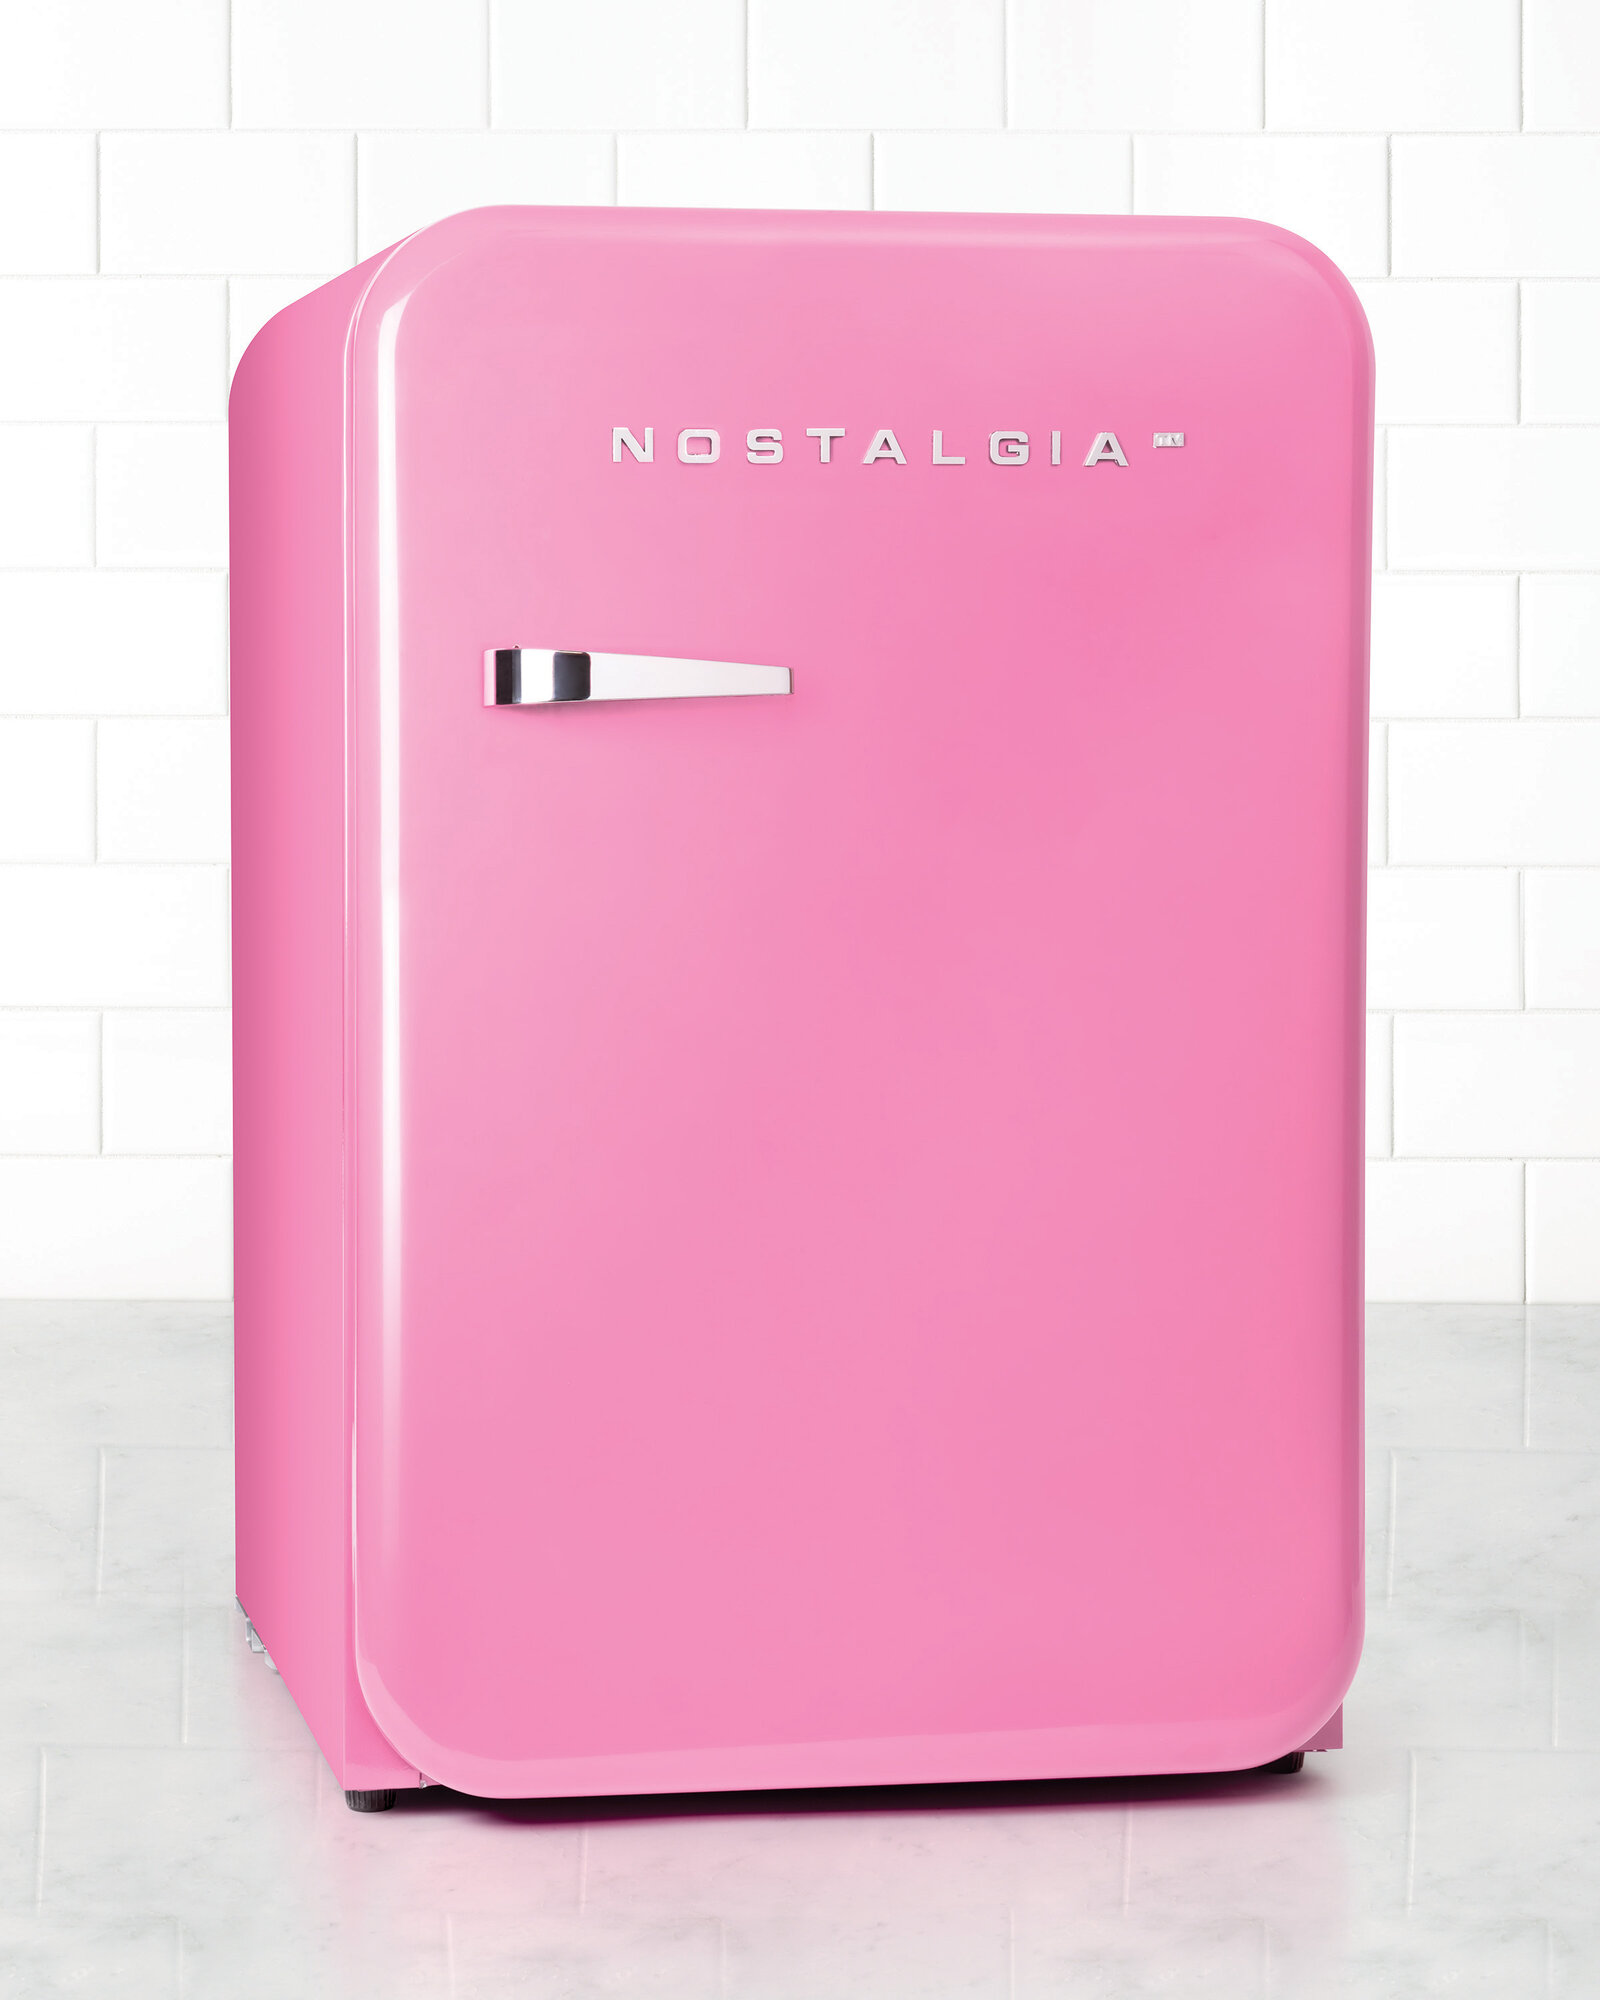 Nostalgia Retro Series™ 3.8 cu. ft. Compact Refrigerator Pink eBay